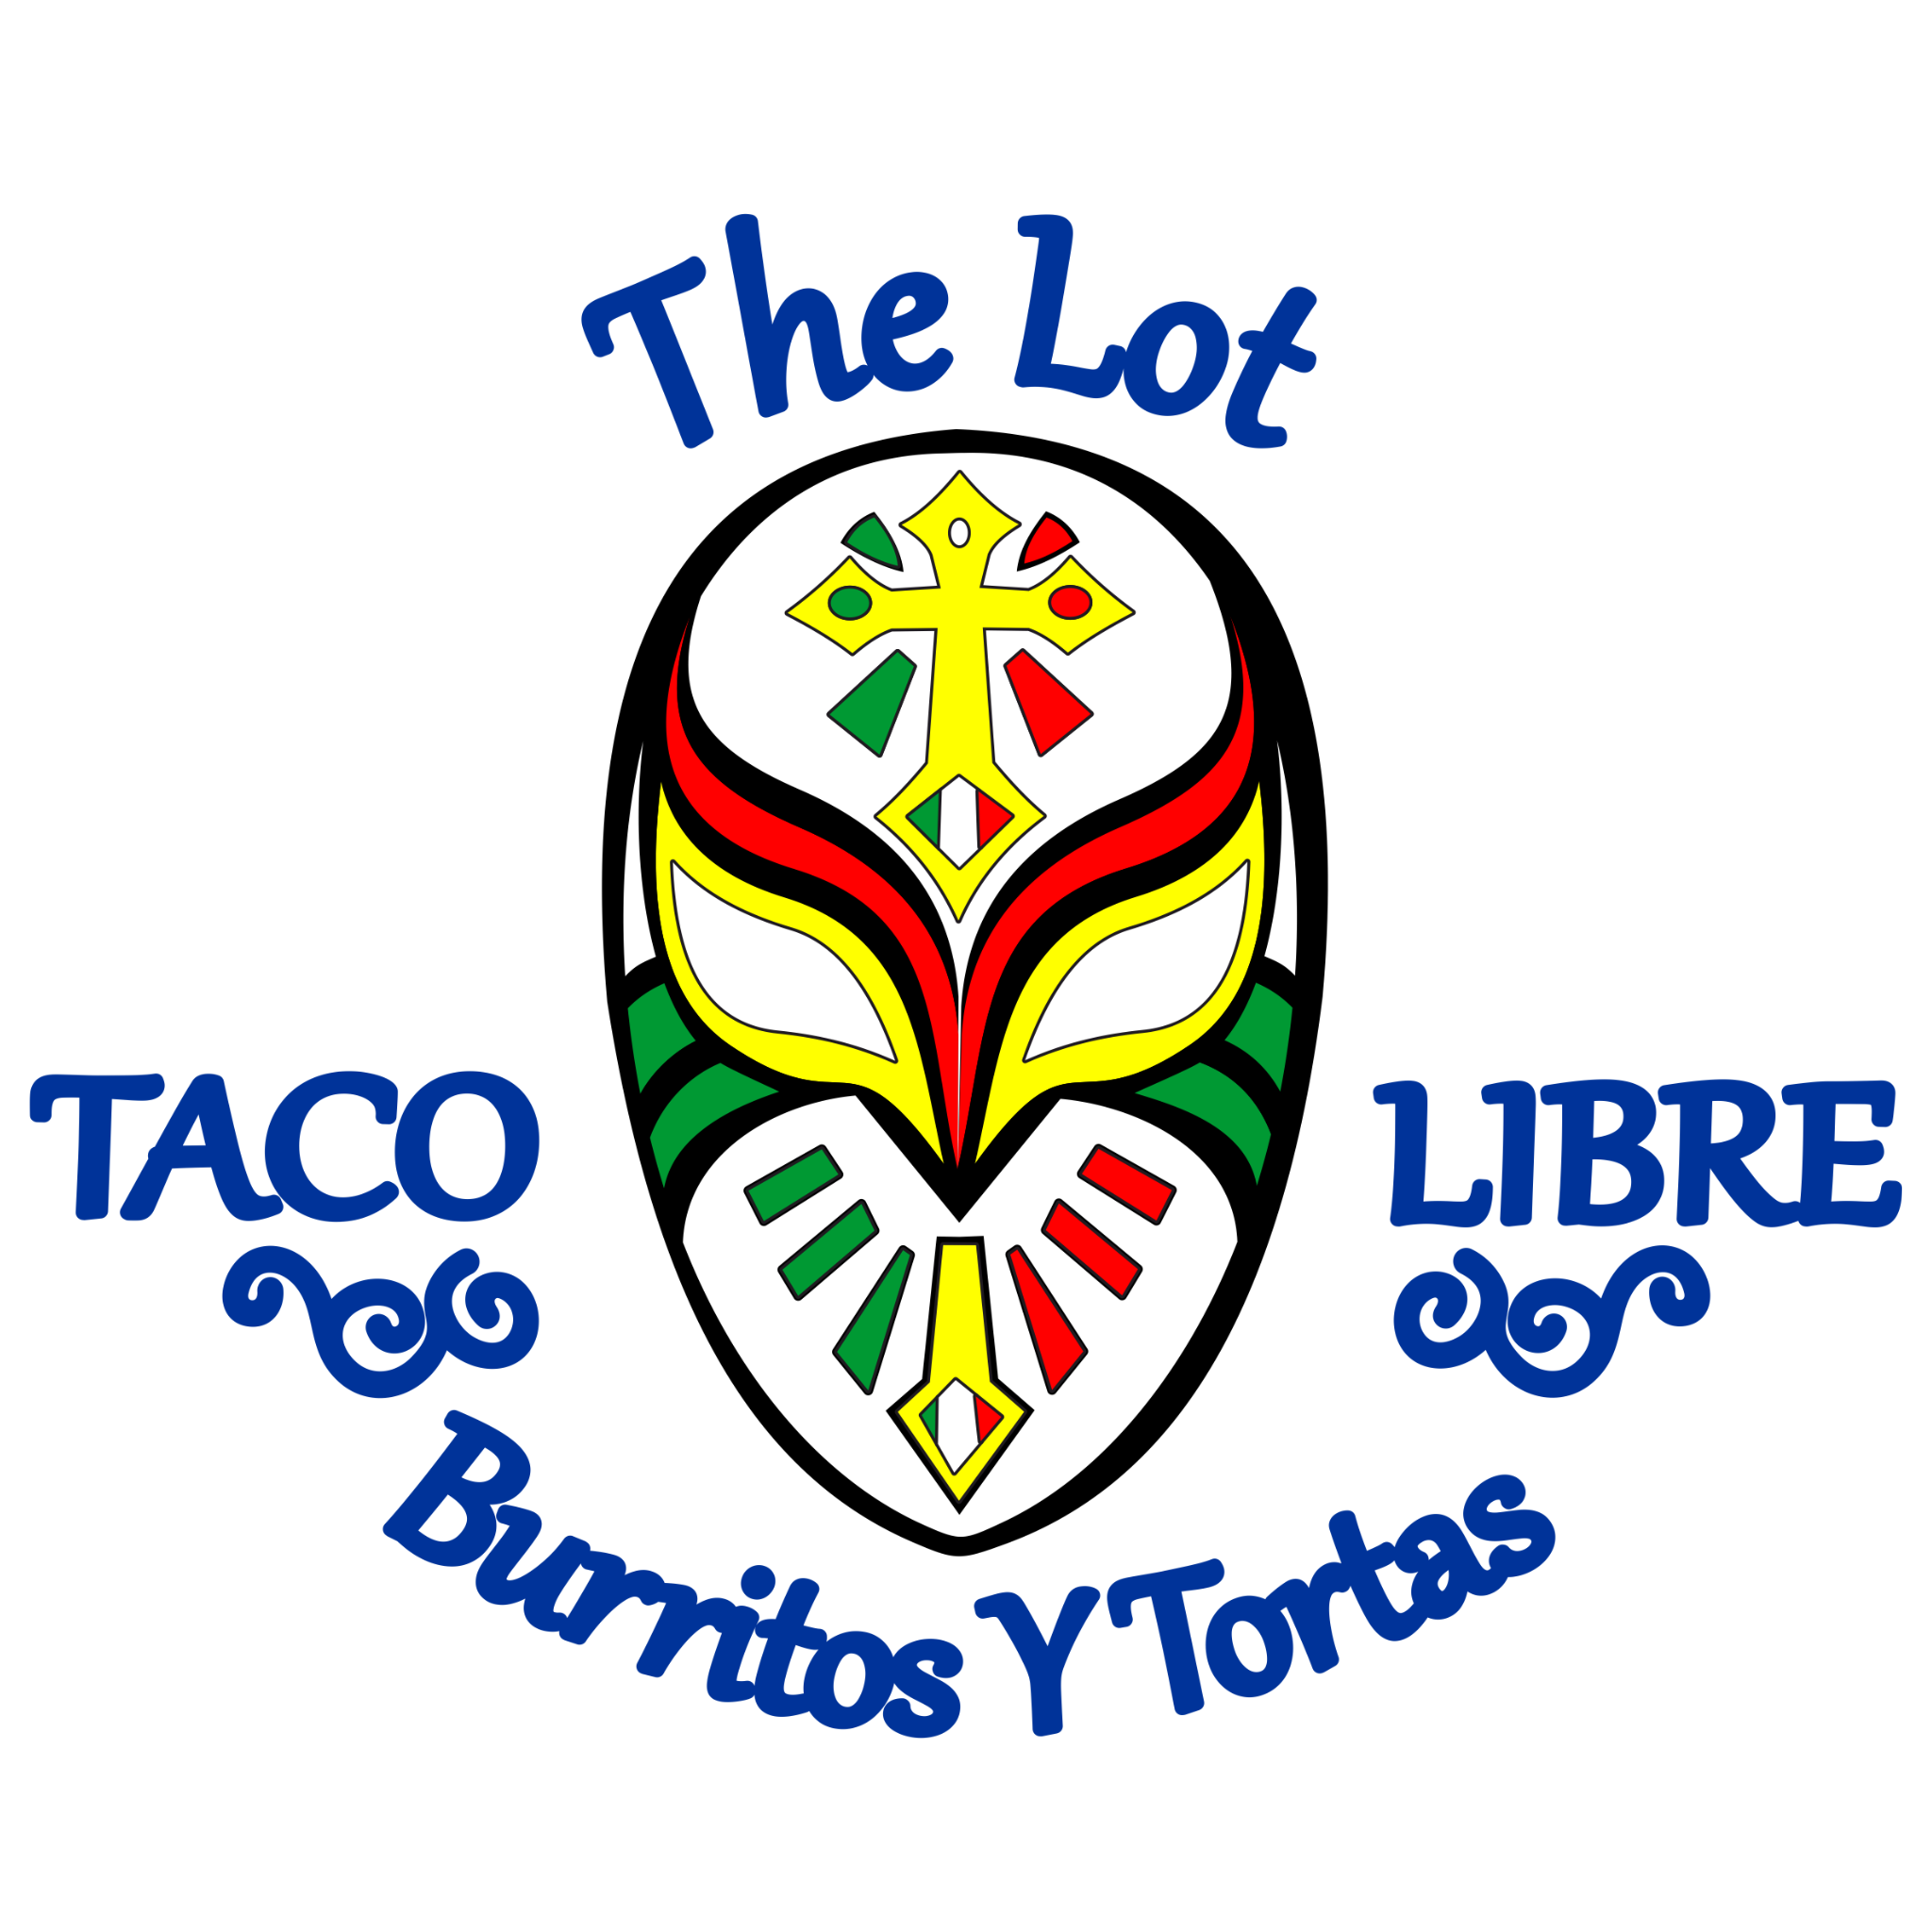 The lot taco libre burritos y tortas logo.